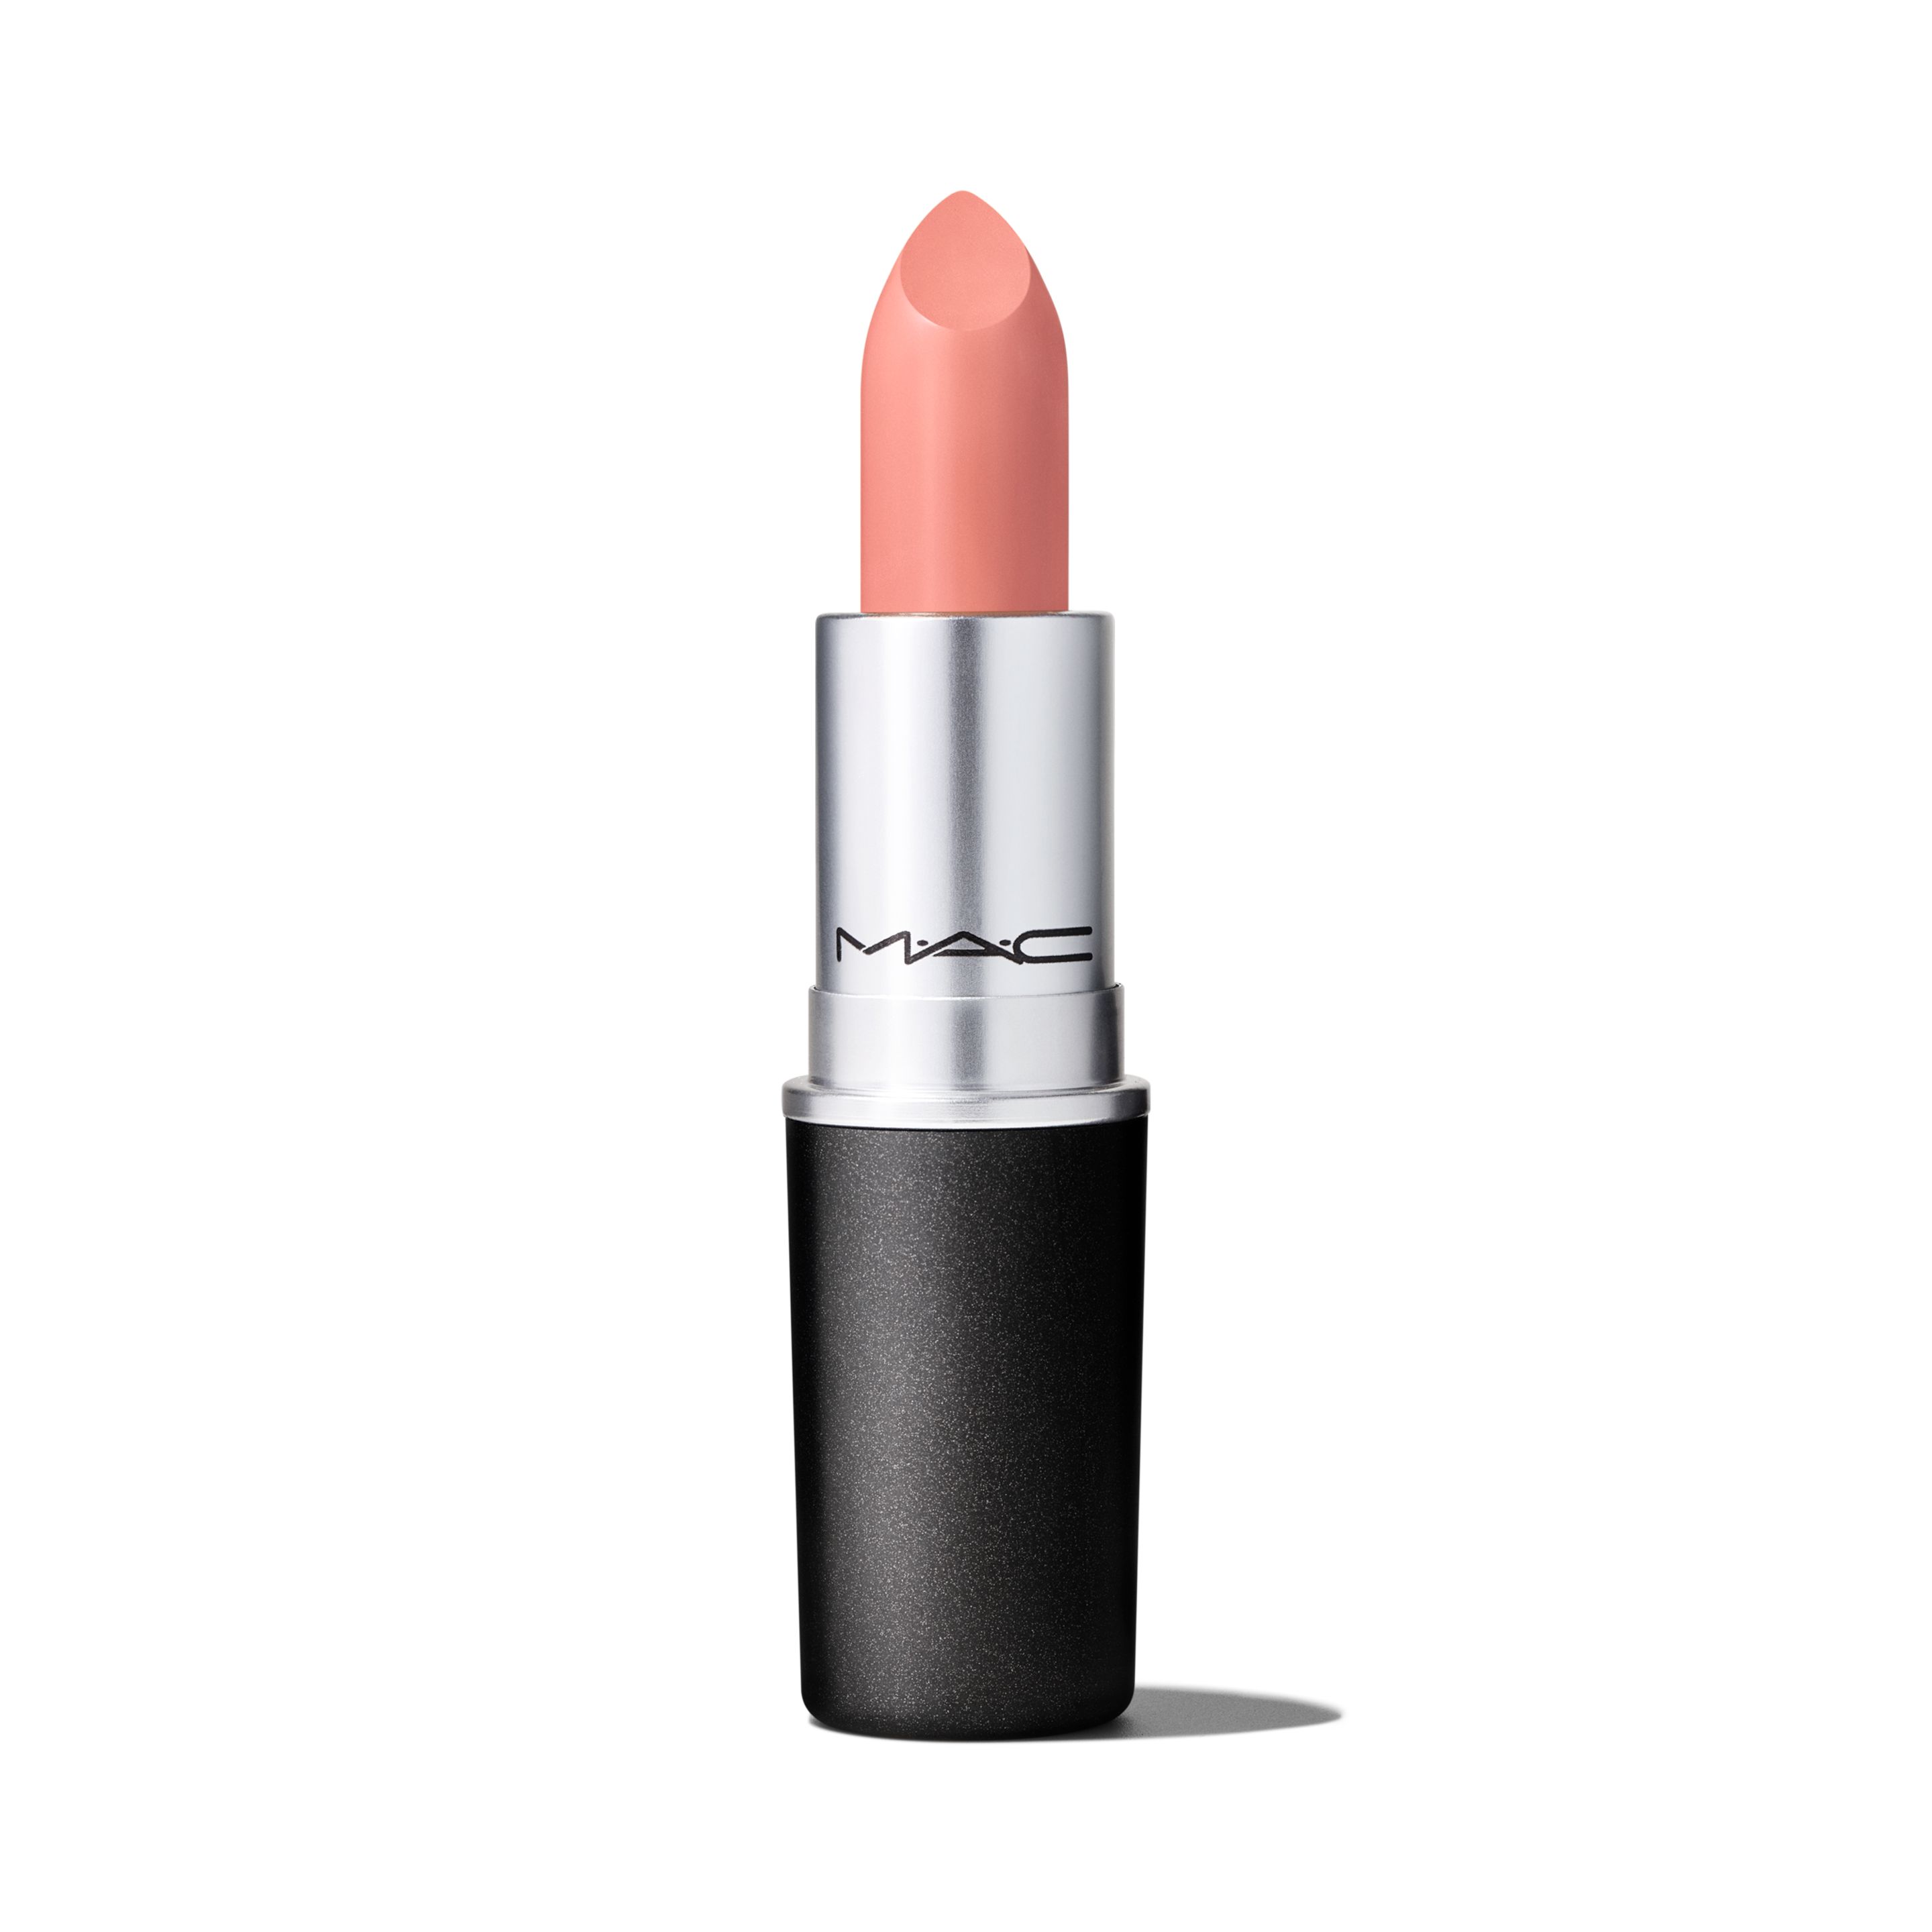 Помада для губ MAC Cosmetics Satin Lipstick кремовая, тон Myth, 3 г помада для губ mac cosmetics satin lipstick кремовая тон faux 3 г